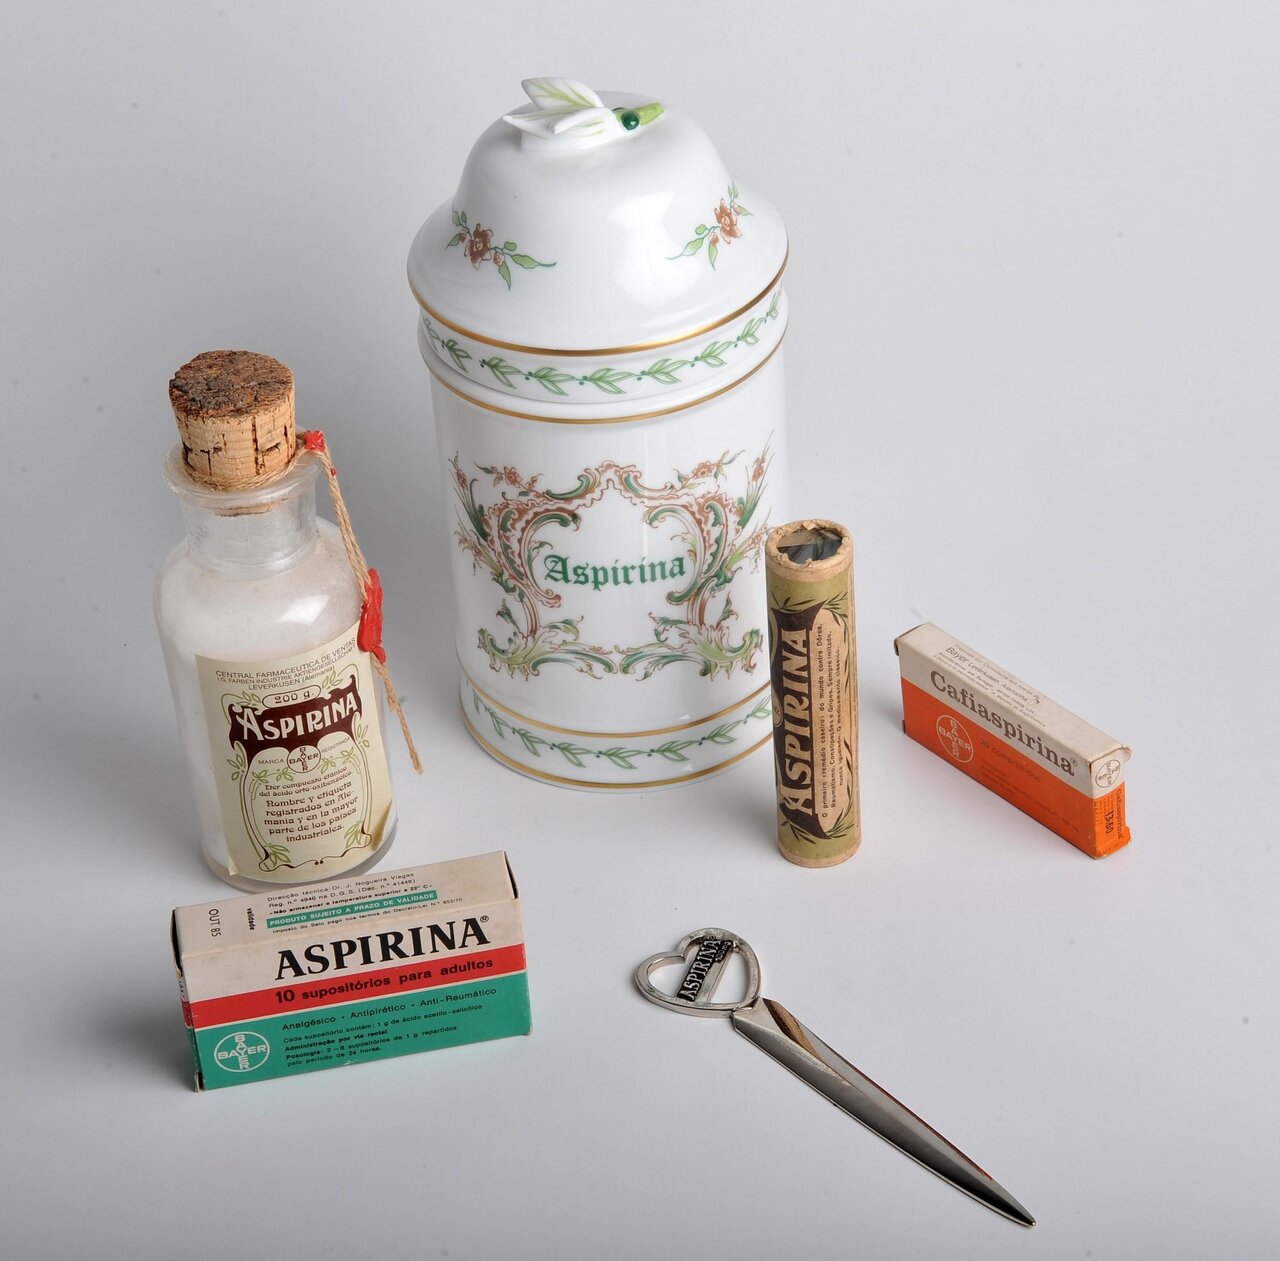 embalagens antigas aspirina - Você sabe qual foi o primeiro fármaco a ser comercializado no mundo? (V.5, N.3, P.1, 2022)